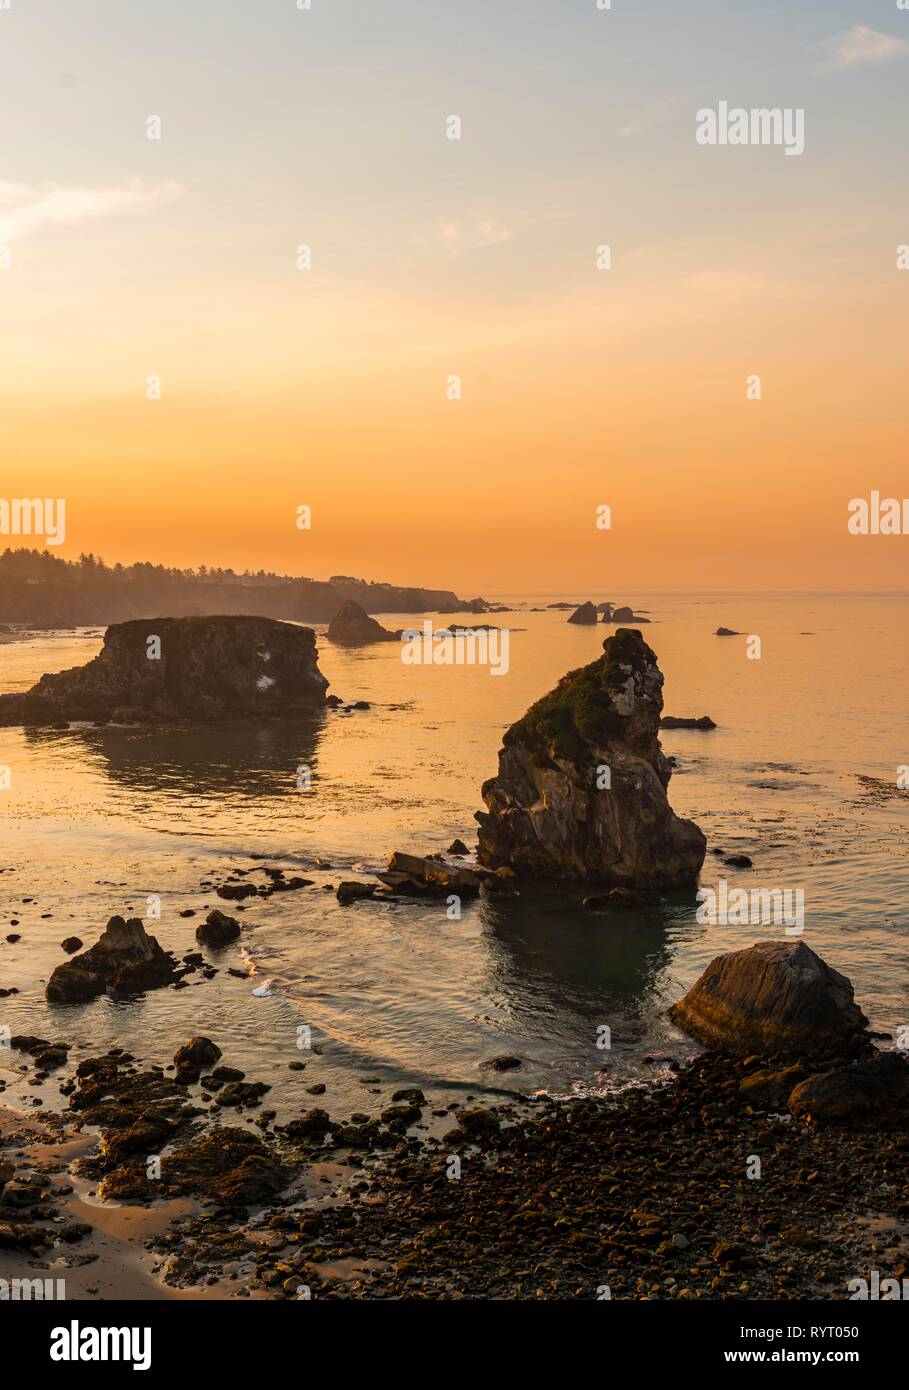 Le lever du soleil, paysage côtier robuste avec de nombreuses îles rocheuses, Harris Beach State Park, Oregon, USA Banque D'Images